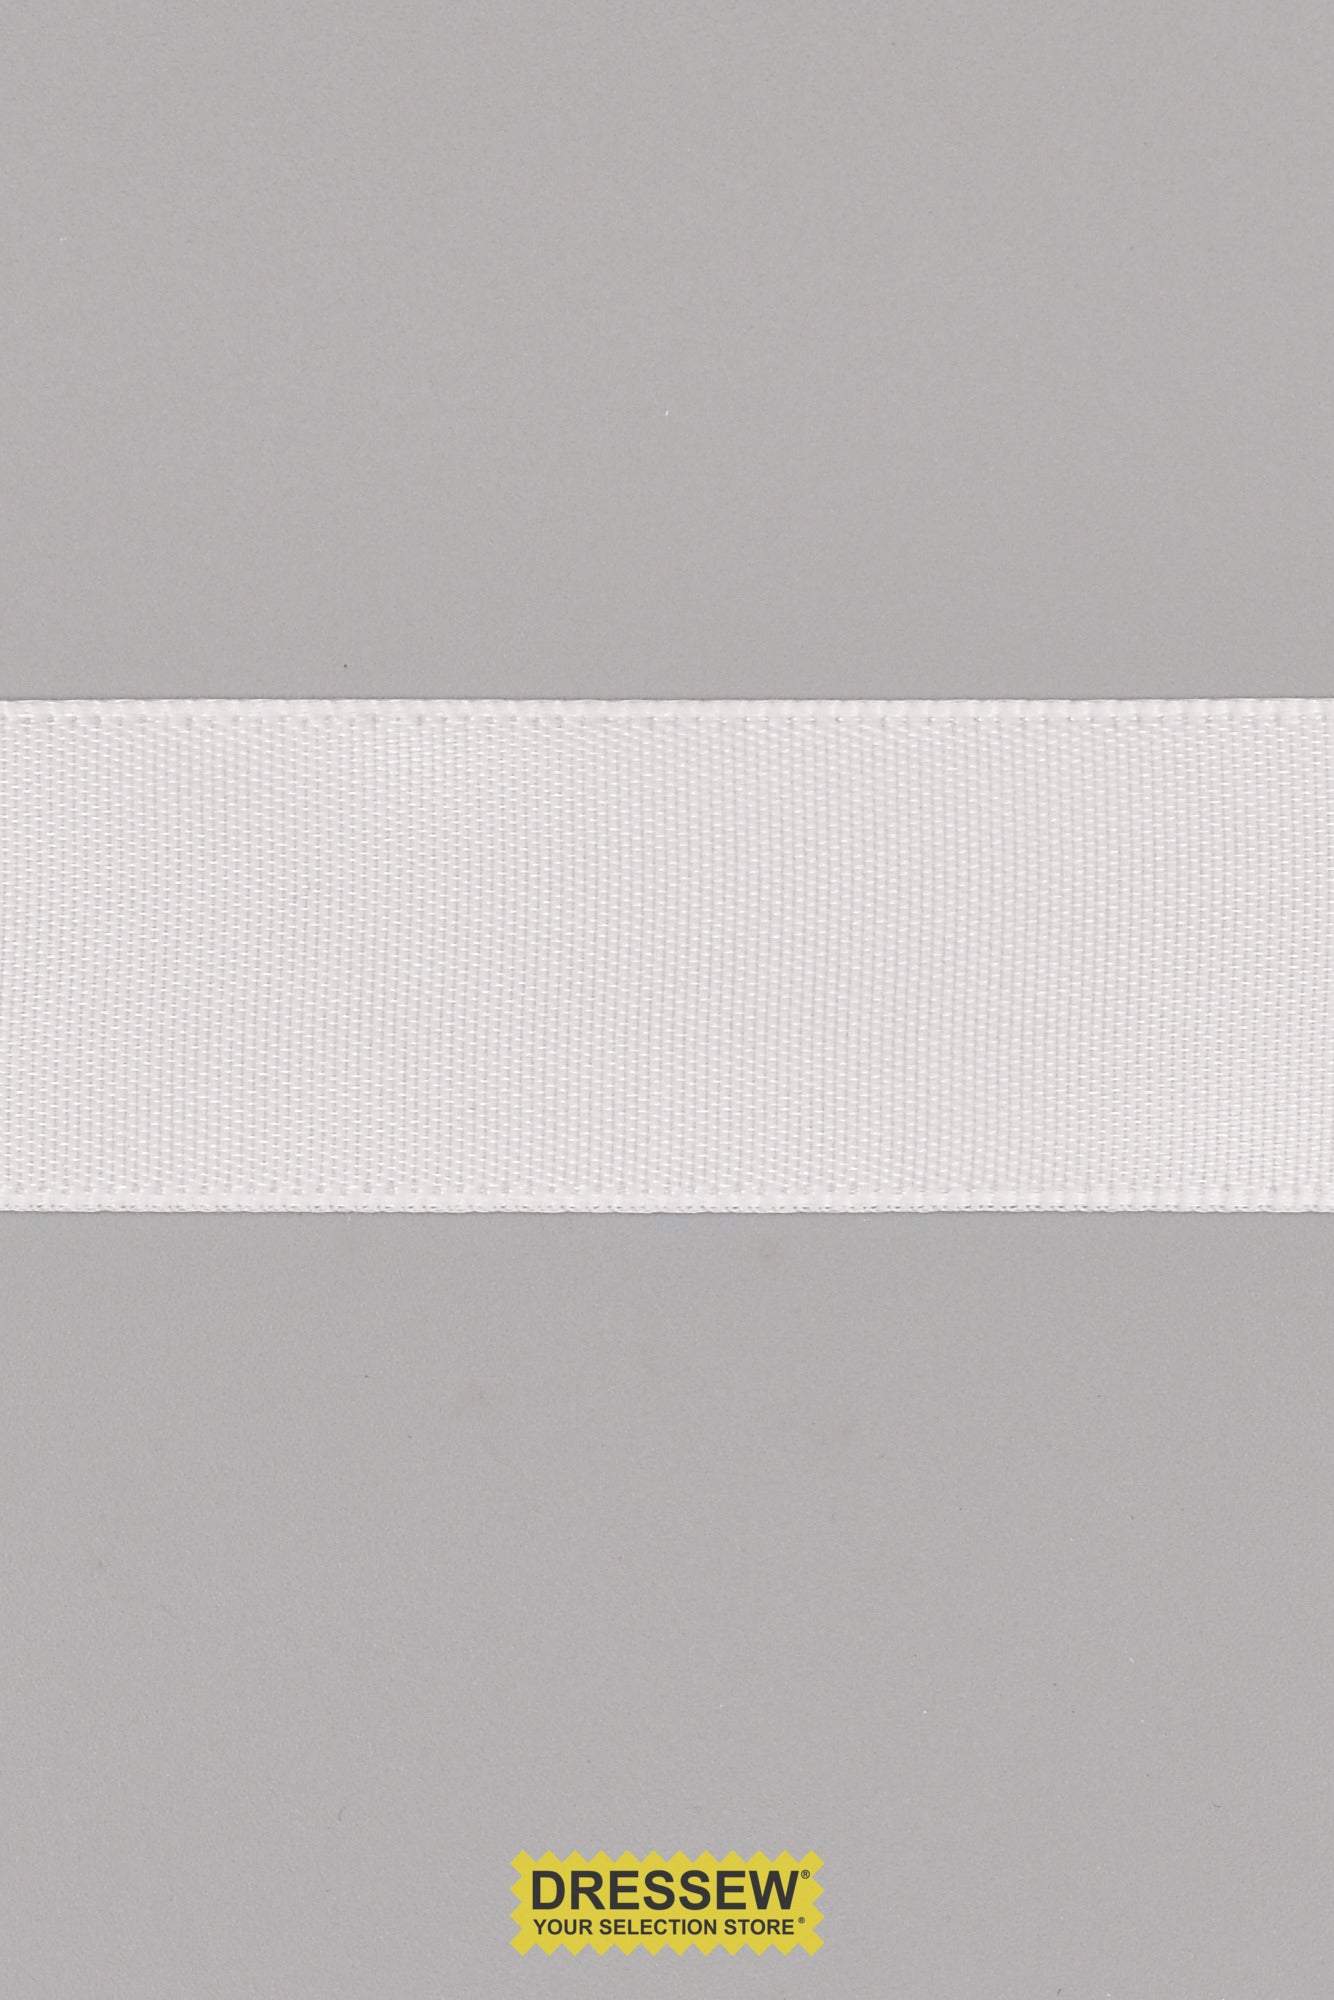 Single Face Satin Ribbon 22mm (7/8") White